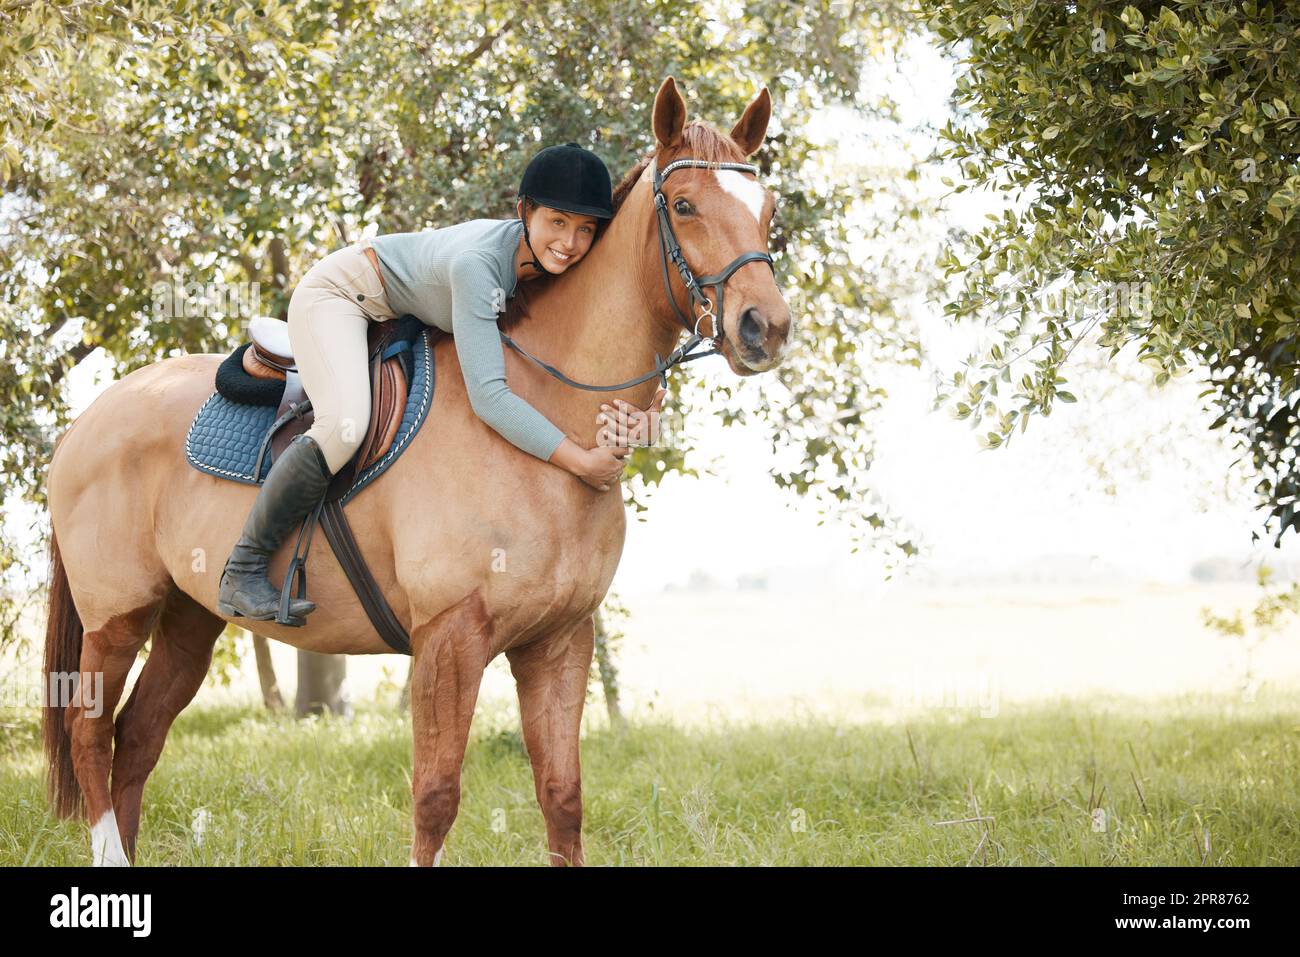 Ce que le ciel peut offrir mieux. Une jeune femme attrayante debout avec son cheval dans une forêt. Banque D'Images